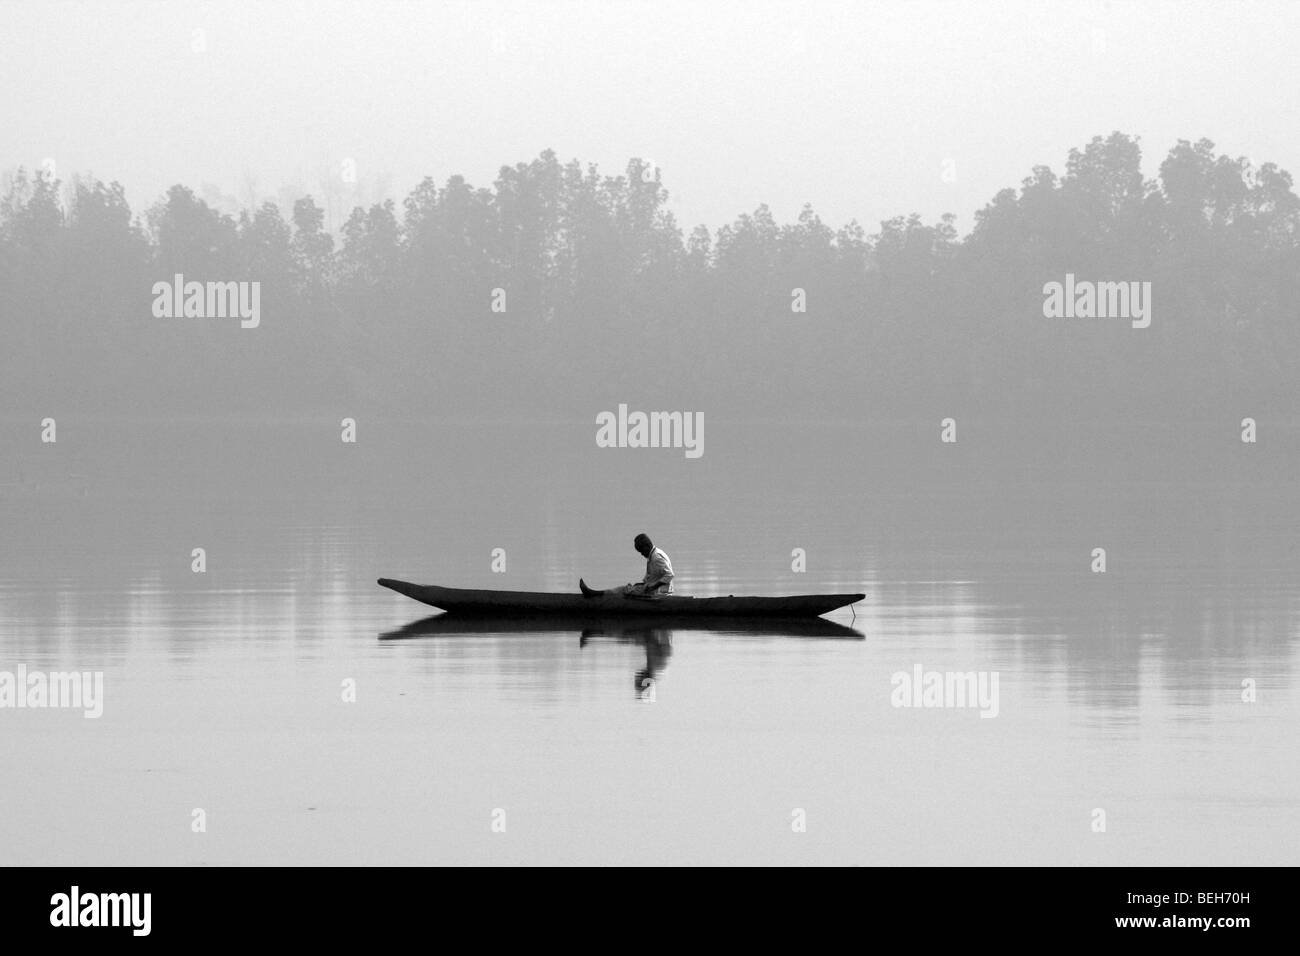 Fisherman in canoe, Bintan Bolong river, The Gambia Stock Photo